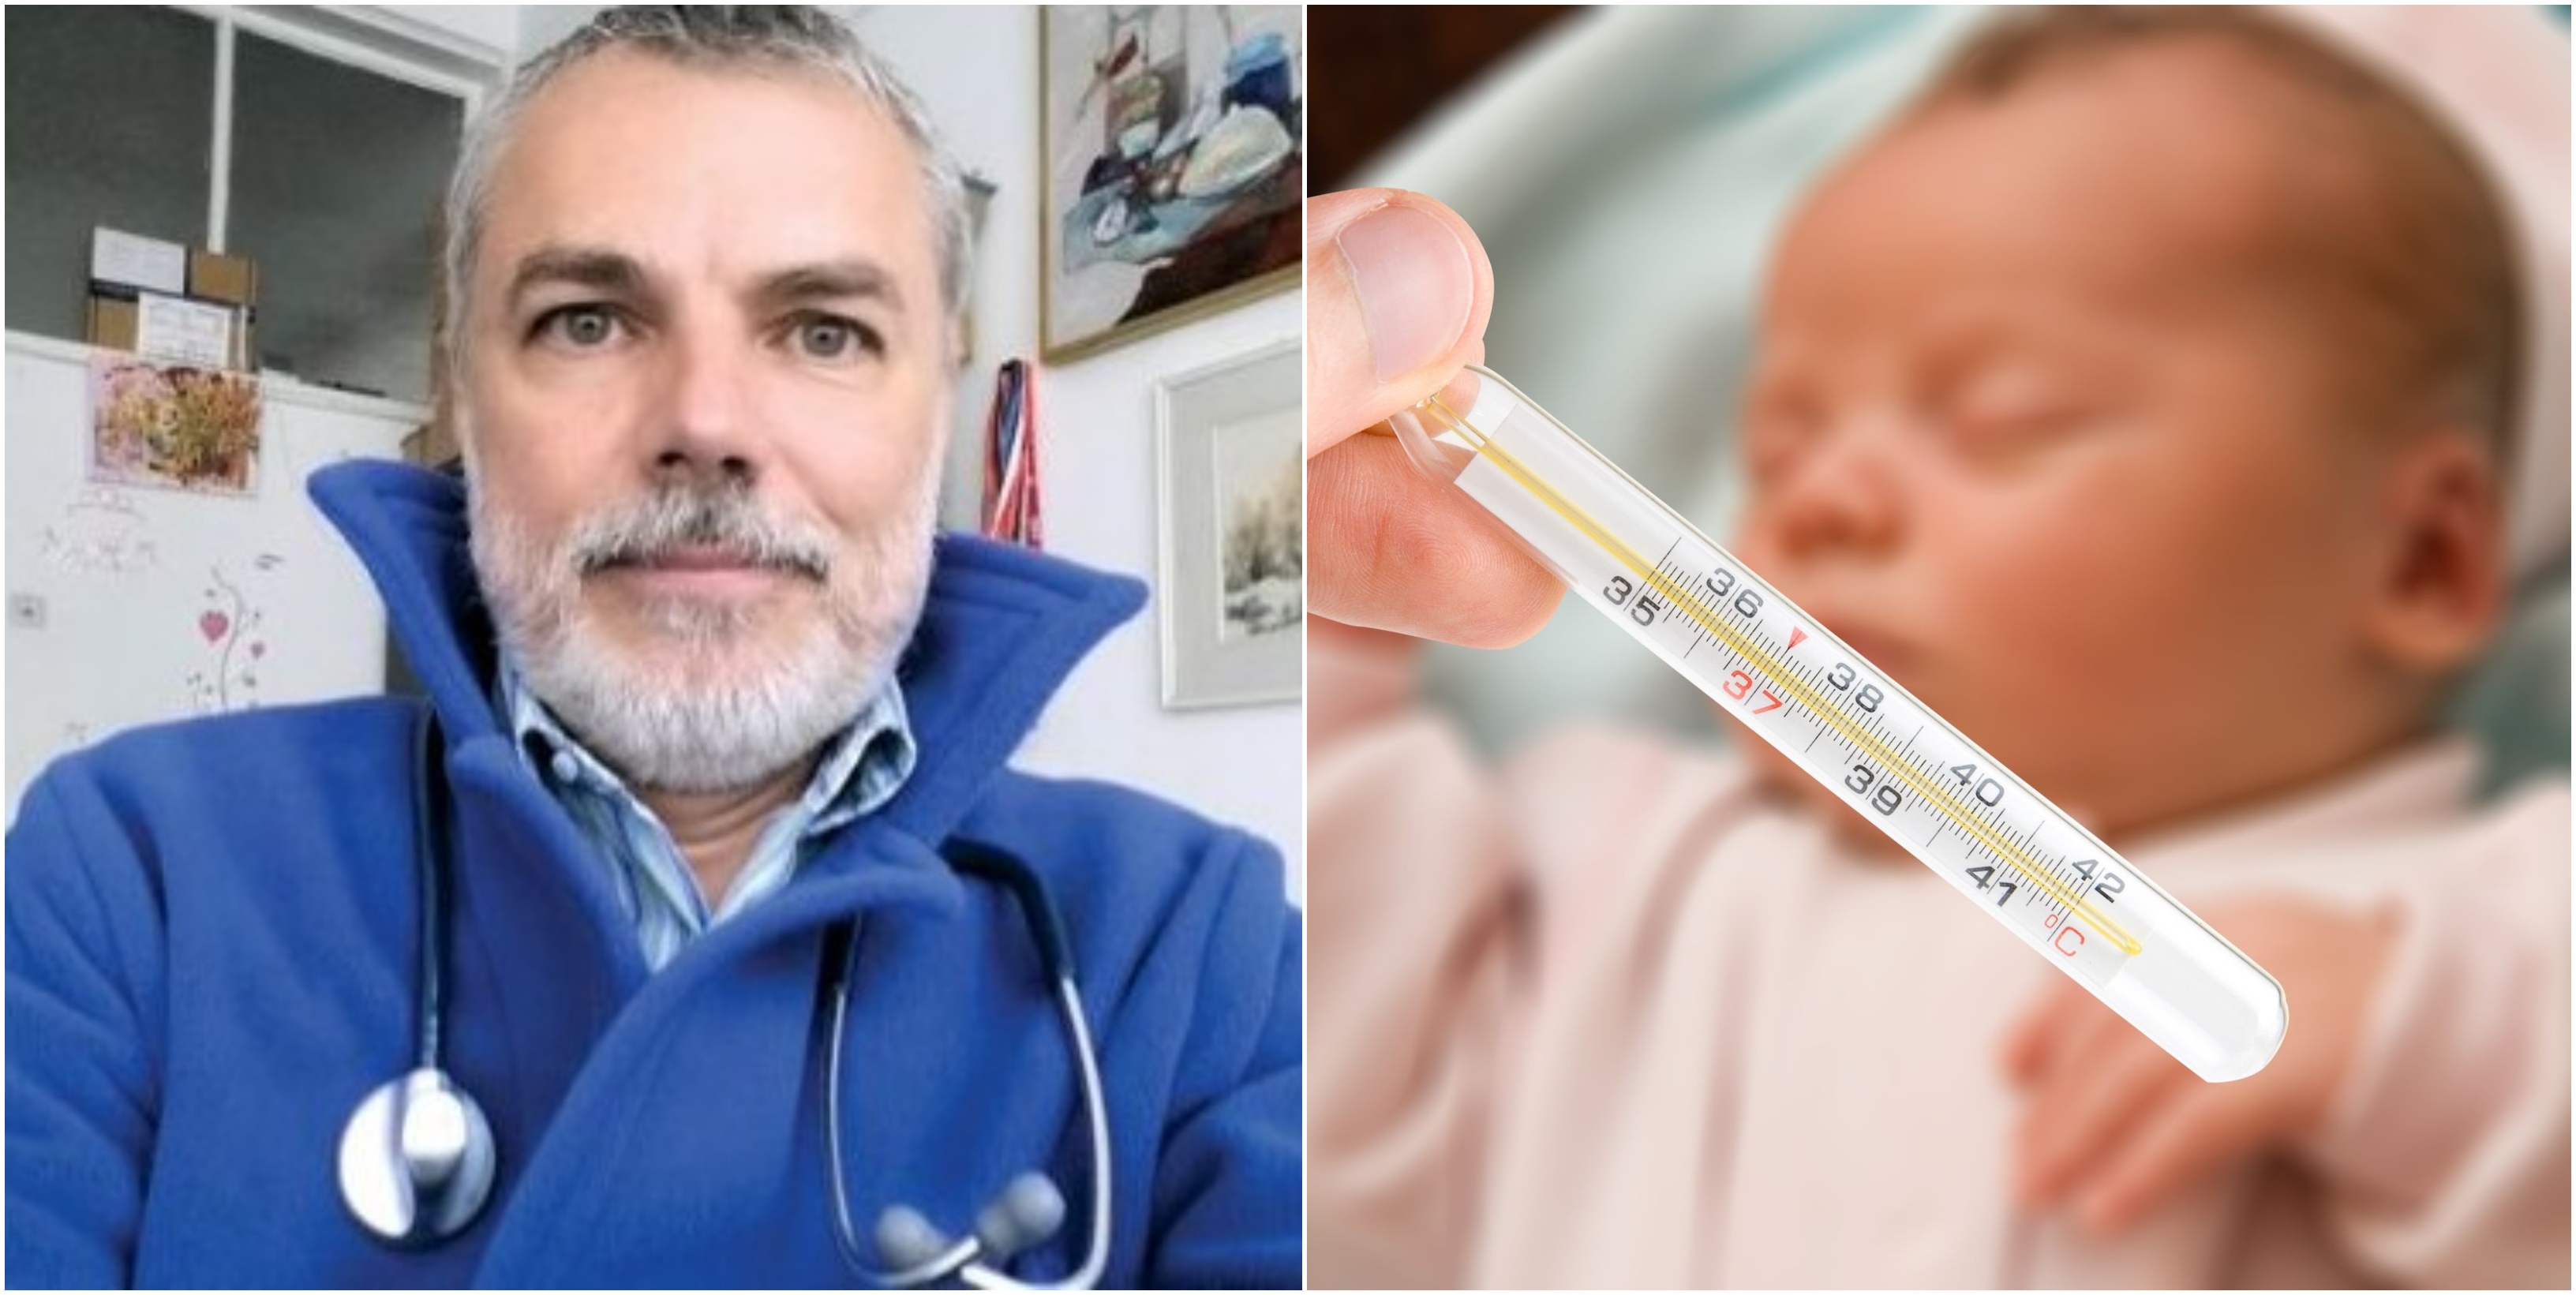 Dr. Mihai Craiu avertizeaza: "Nu dati copiilor mai mici de 4 ani supozitoare novocalmin!" | Demamici.ro